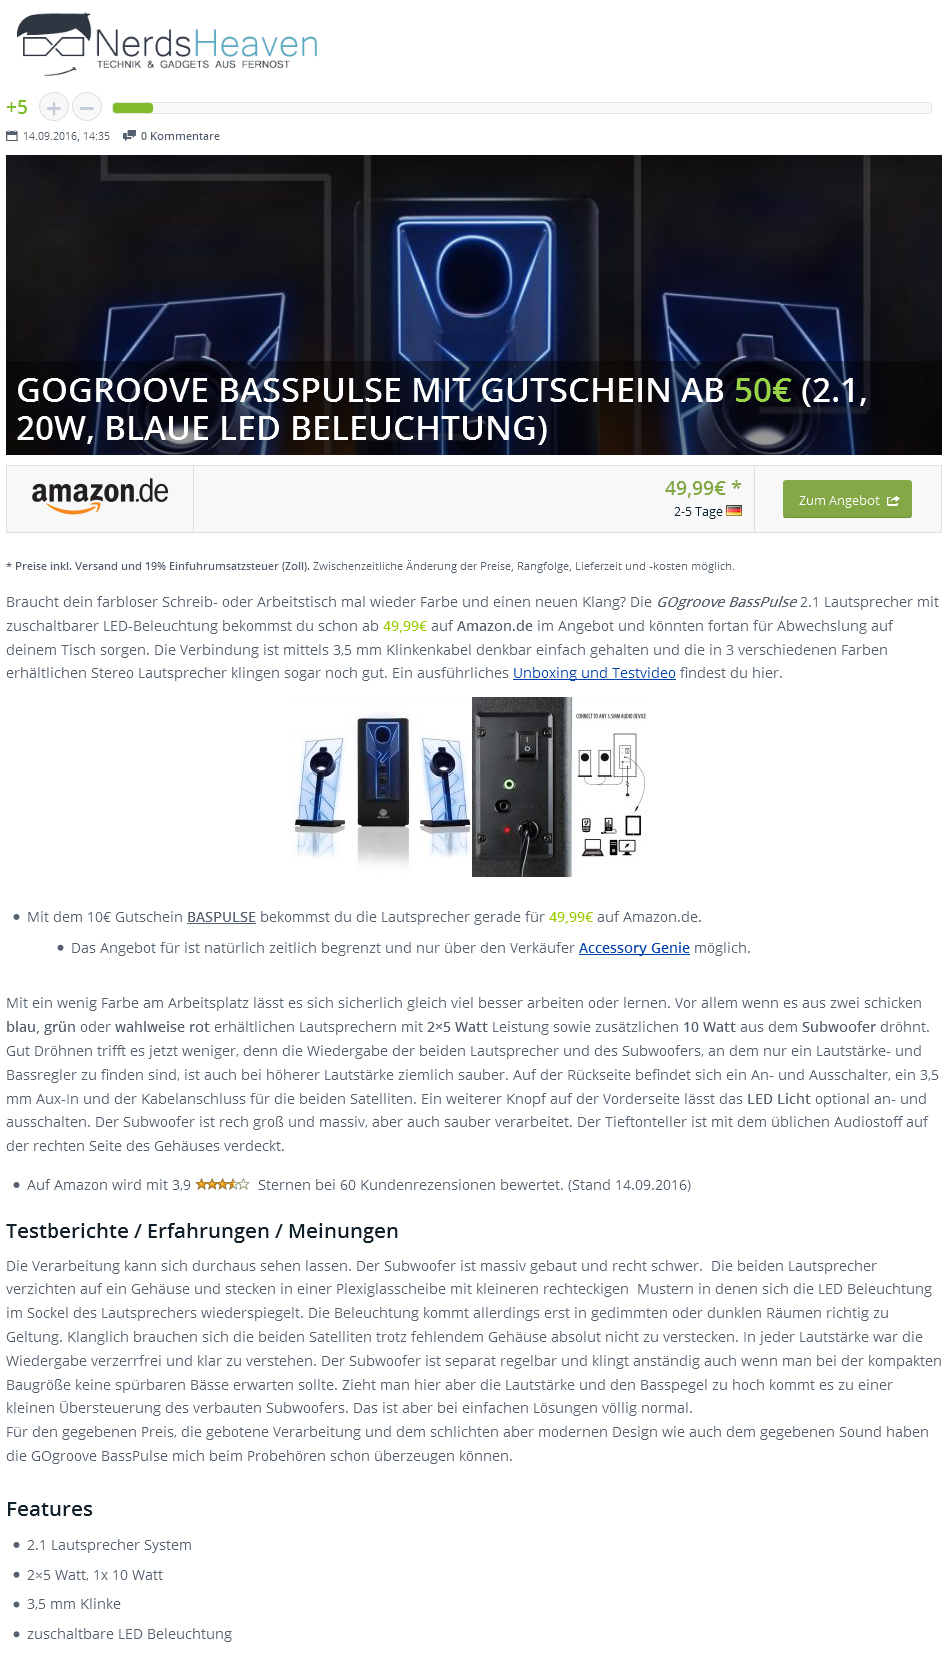 GOGROOVE BASSPULSE MIT GUTSCHEIN AB 50€ (2.1, 20W, BLAUE LED BELEUCHTUNG